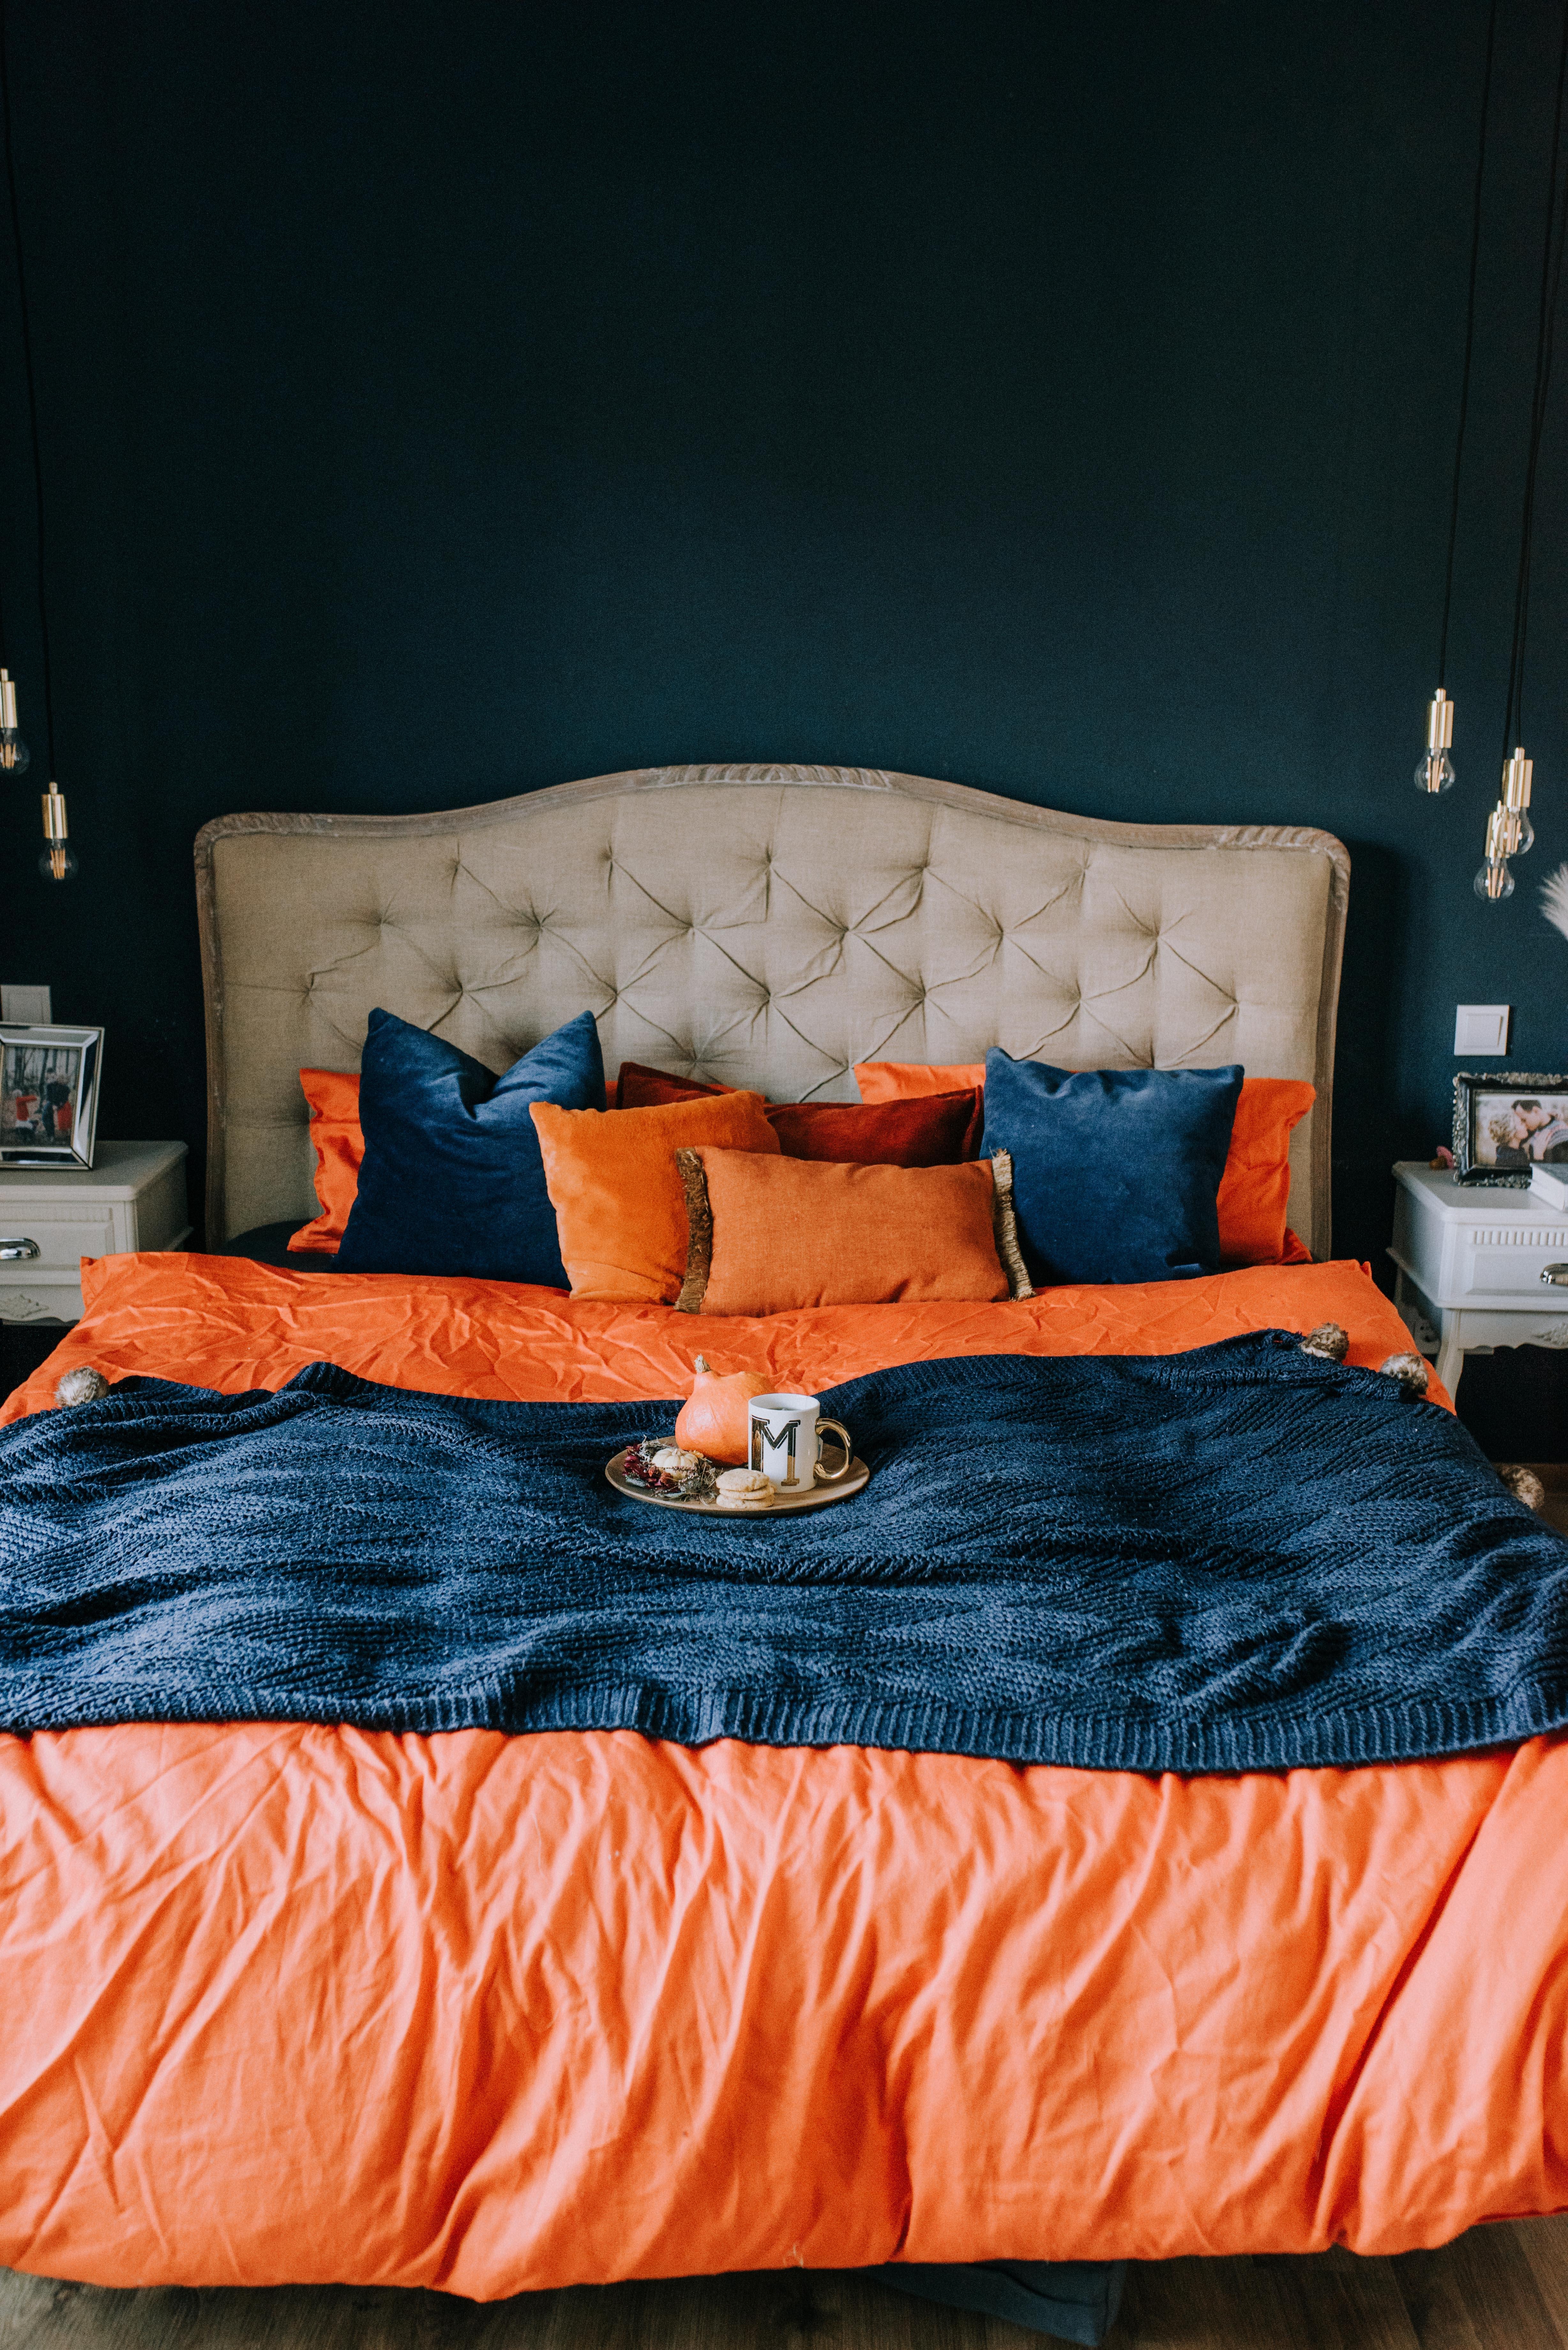 Neue Farben für unser Schlafzimmer 
#couchliebt #couchstyle #Schlafzimmer #bettwäsche